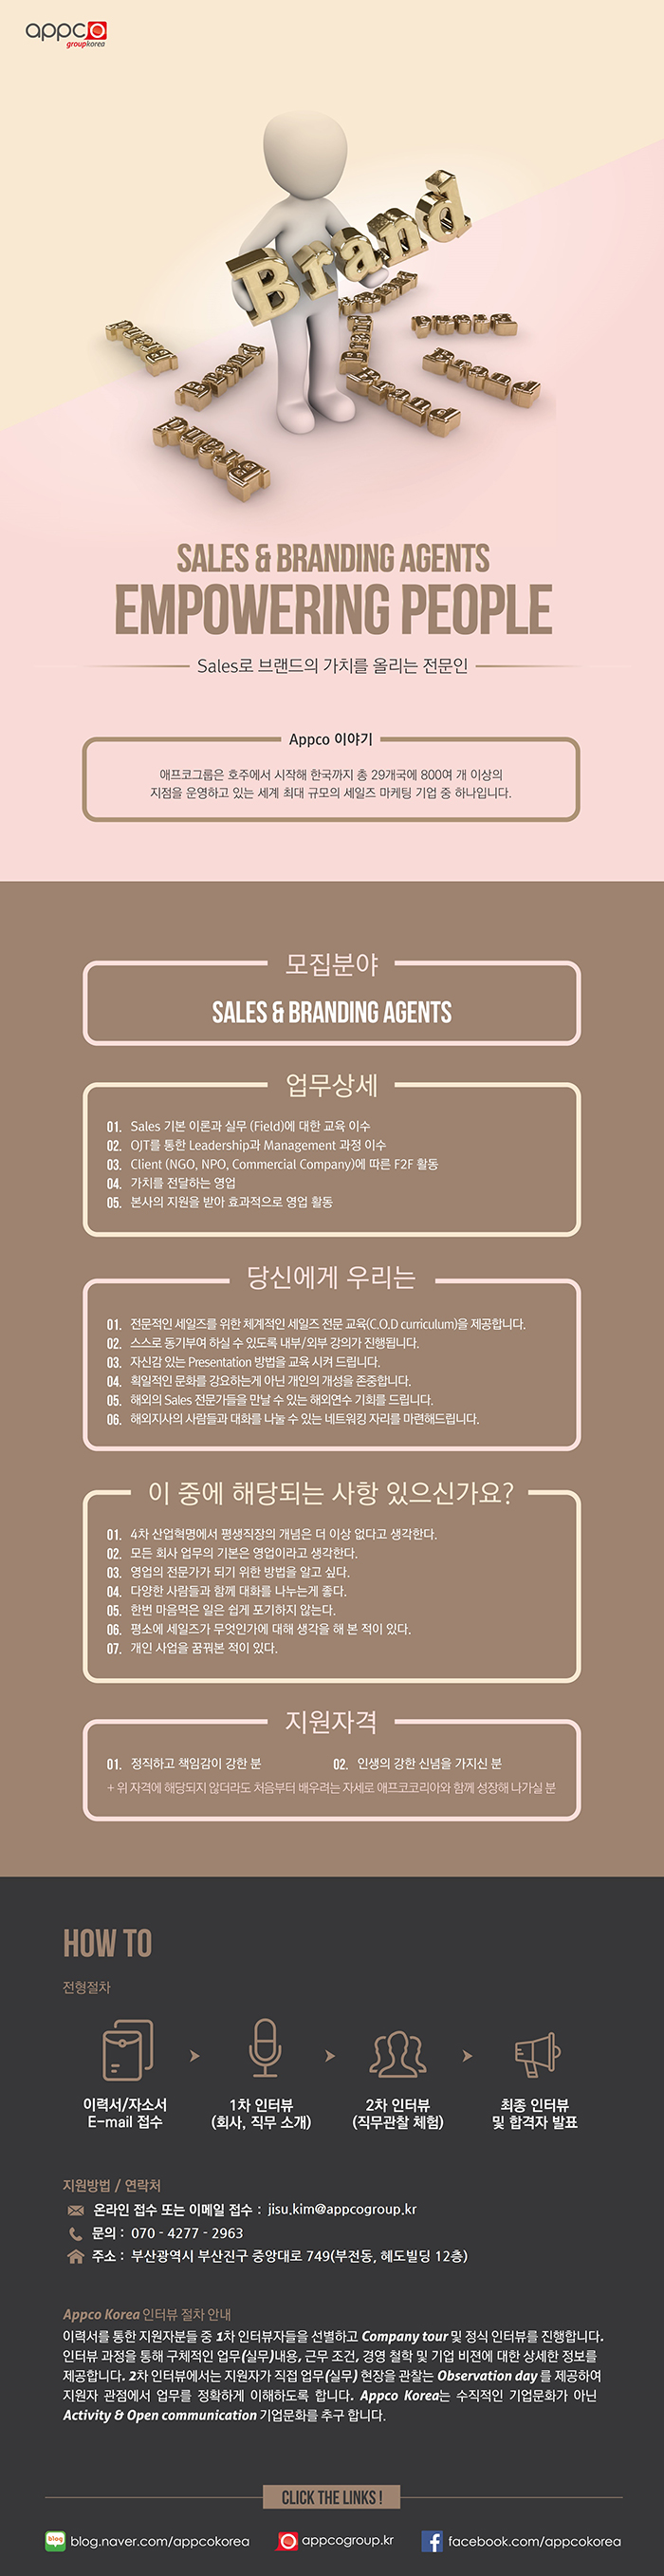 [외국계/부산지점] APPCO KOREA Sales & Branding Agents 모집